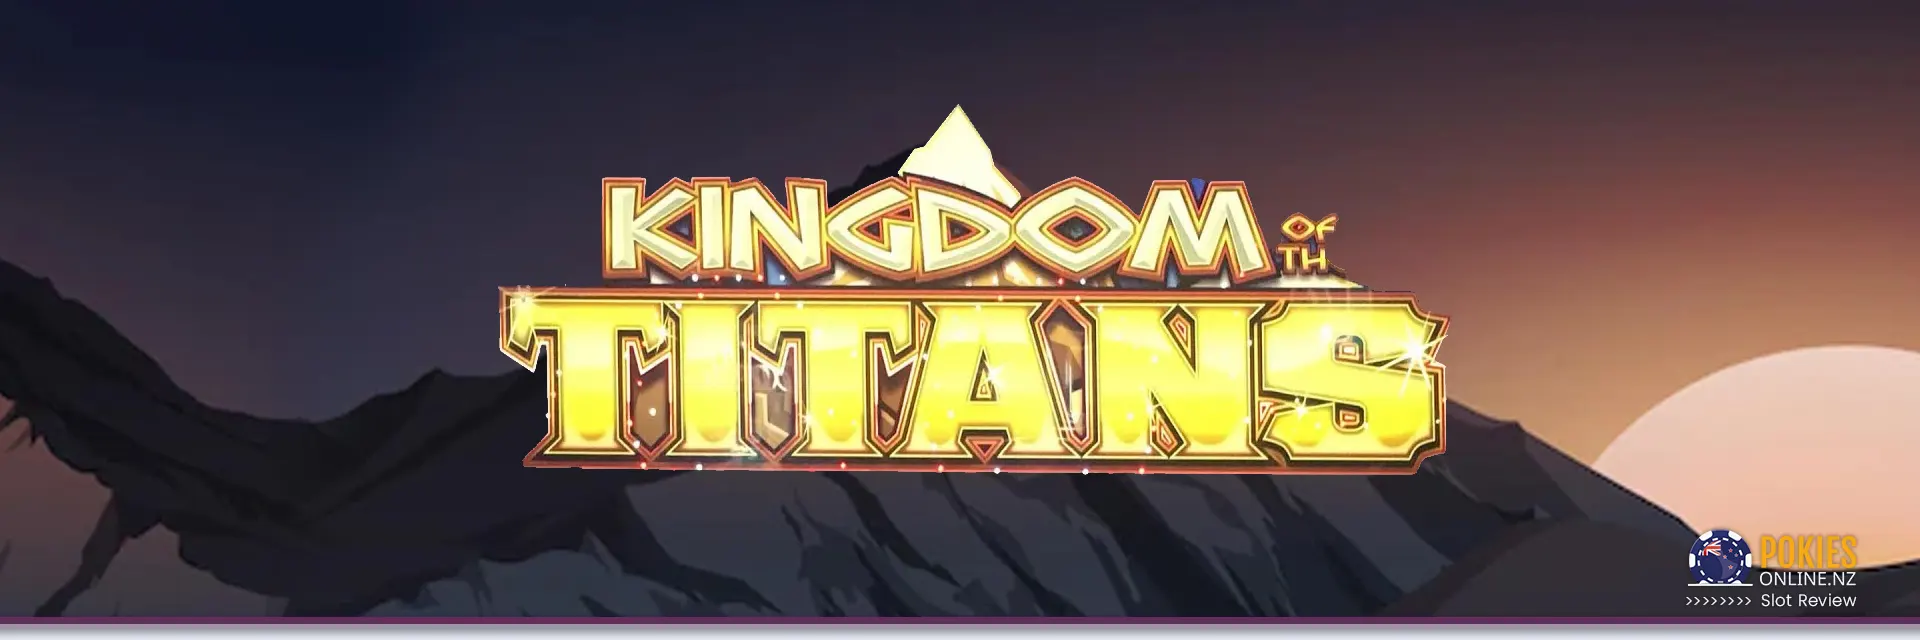 Kingdom Of Titans slot Banner